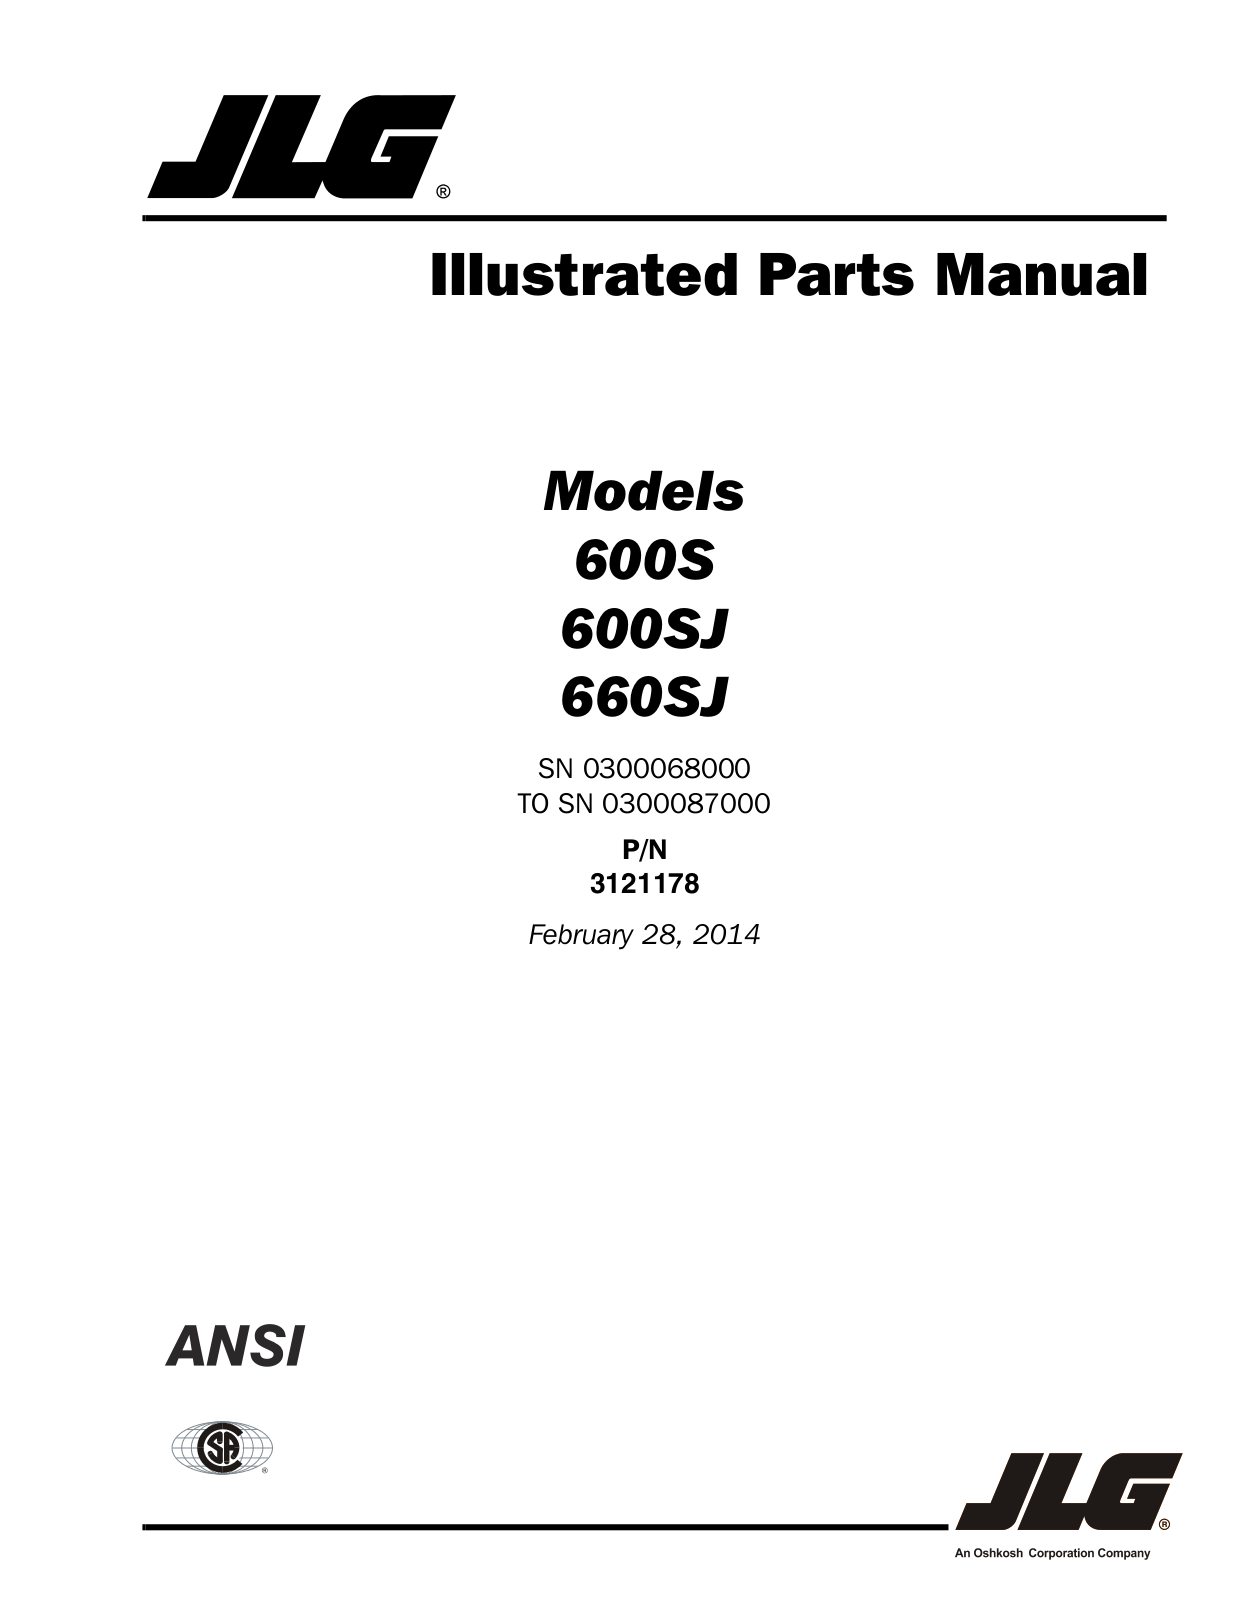 JLG 660SJ Parts Manual